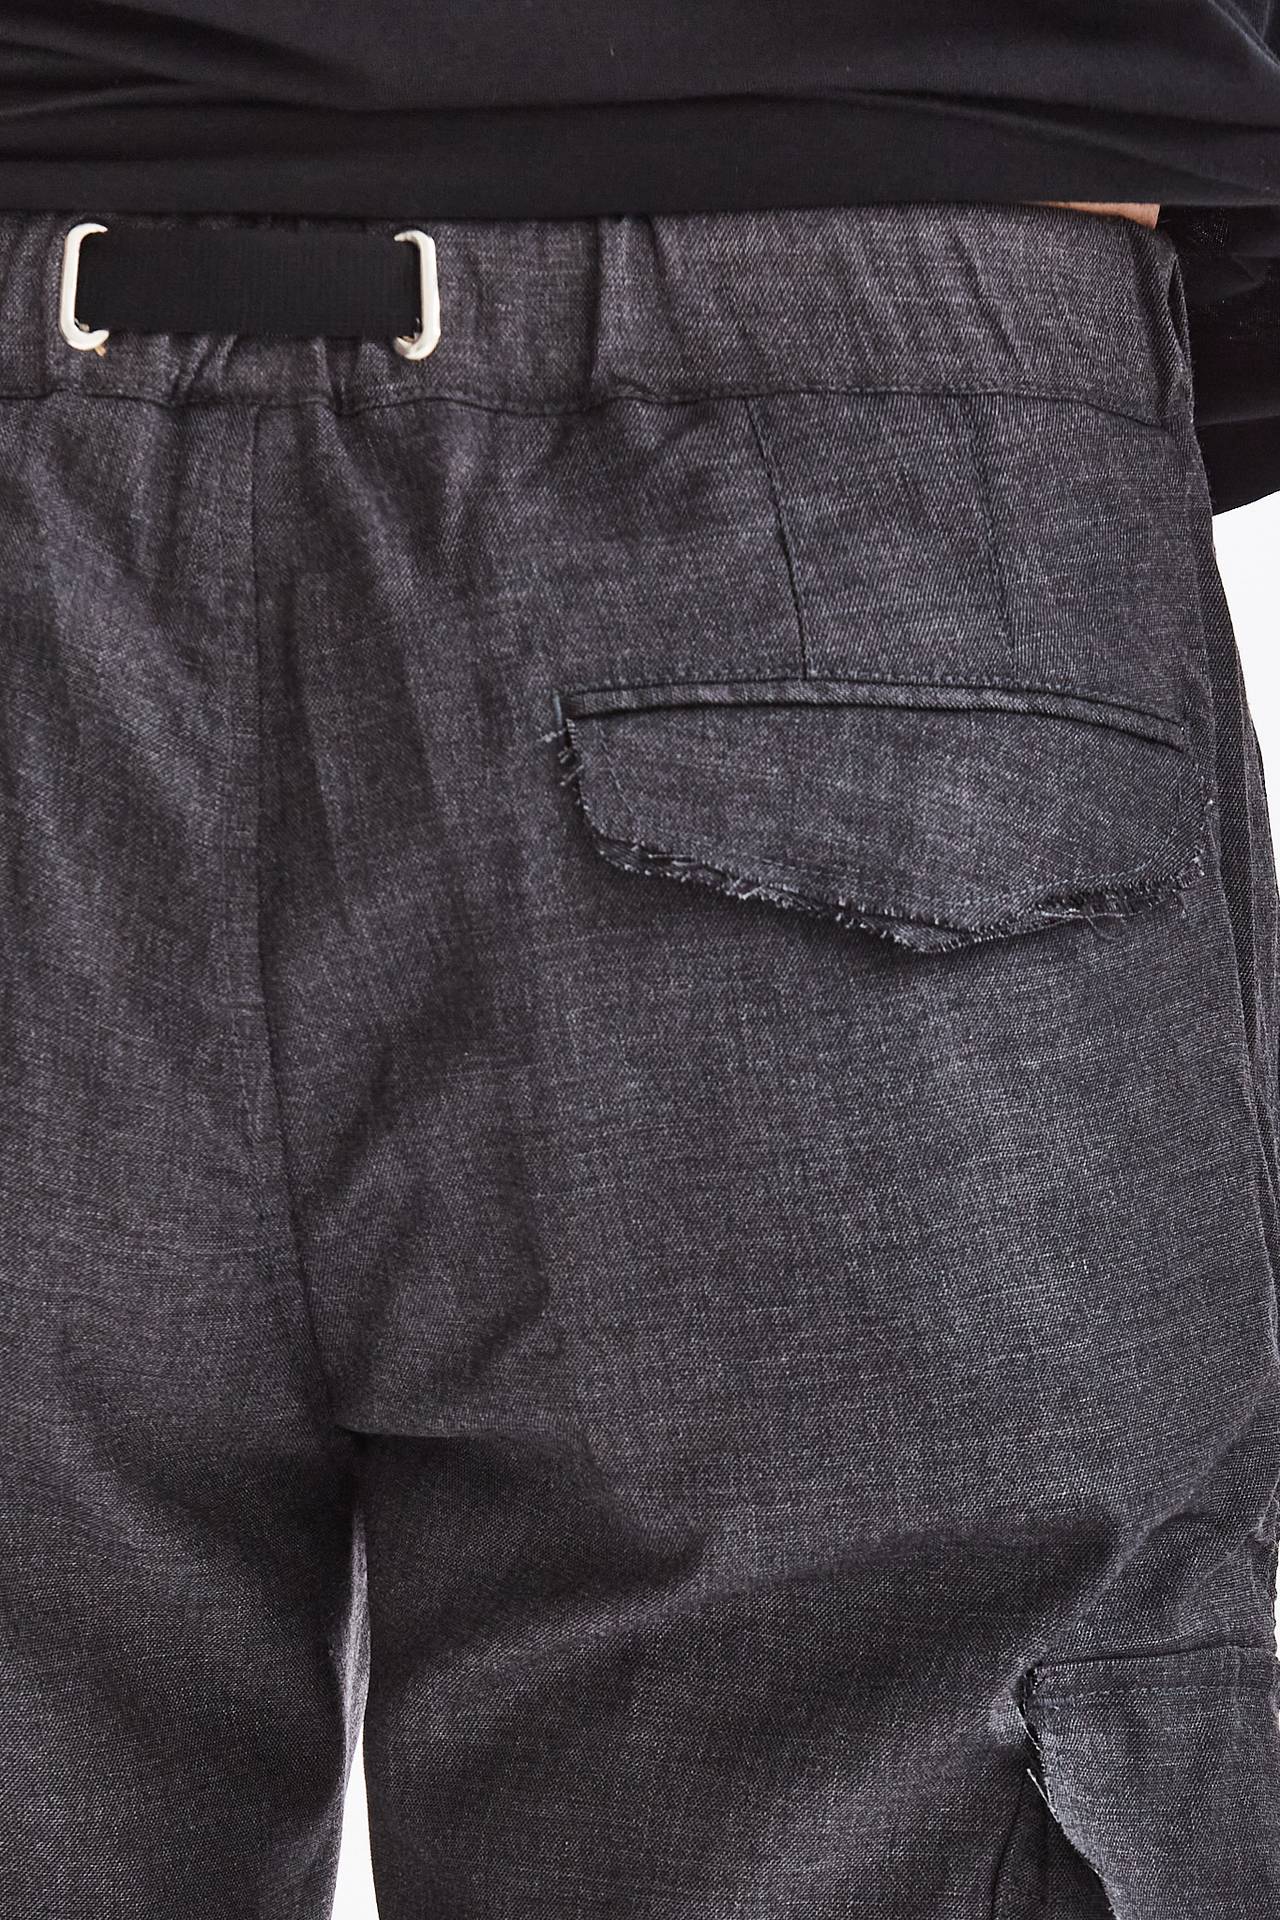 Pantalone cargo in lana grigio